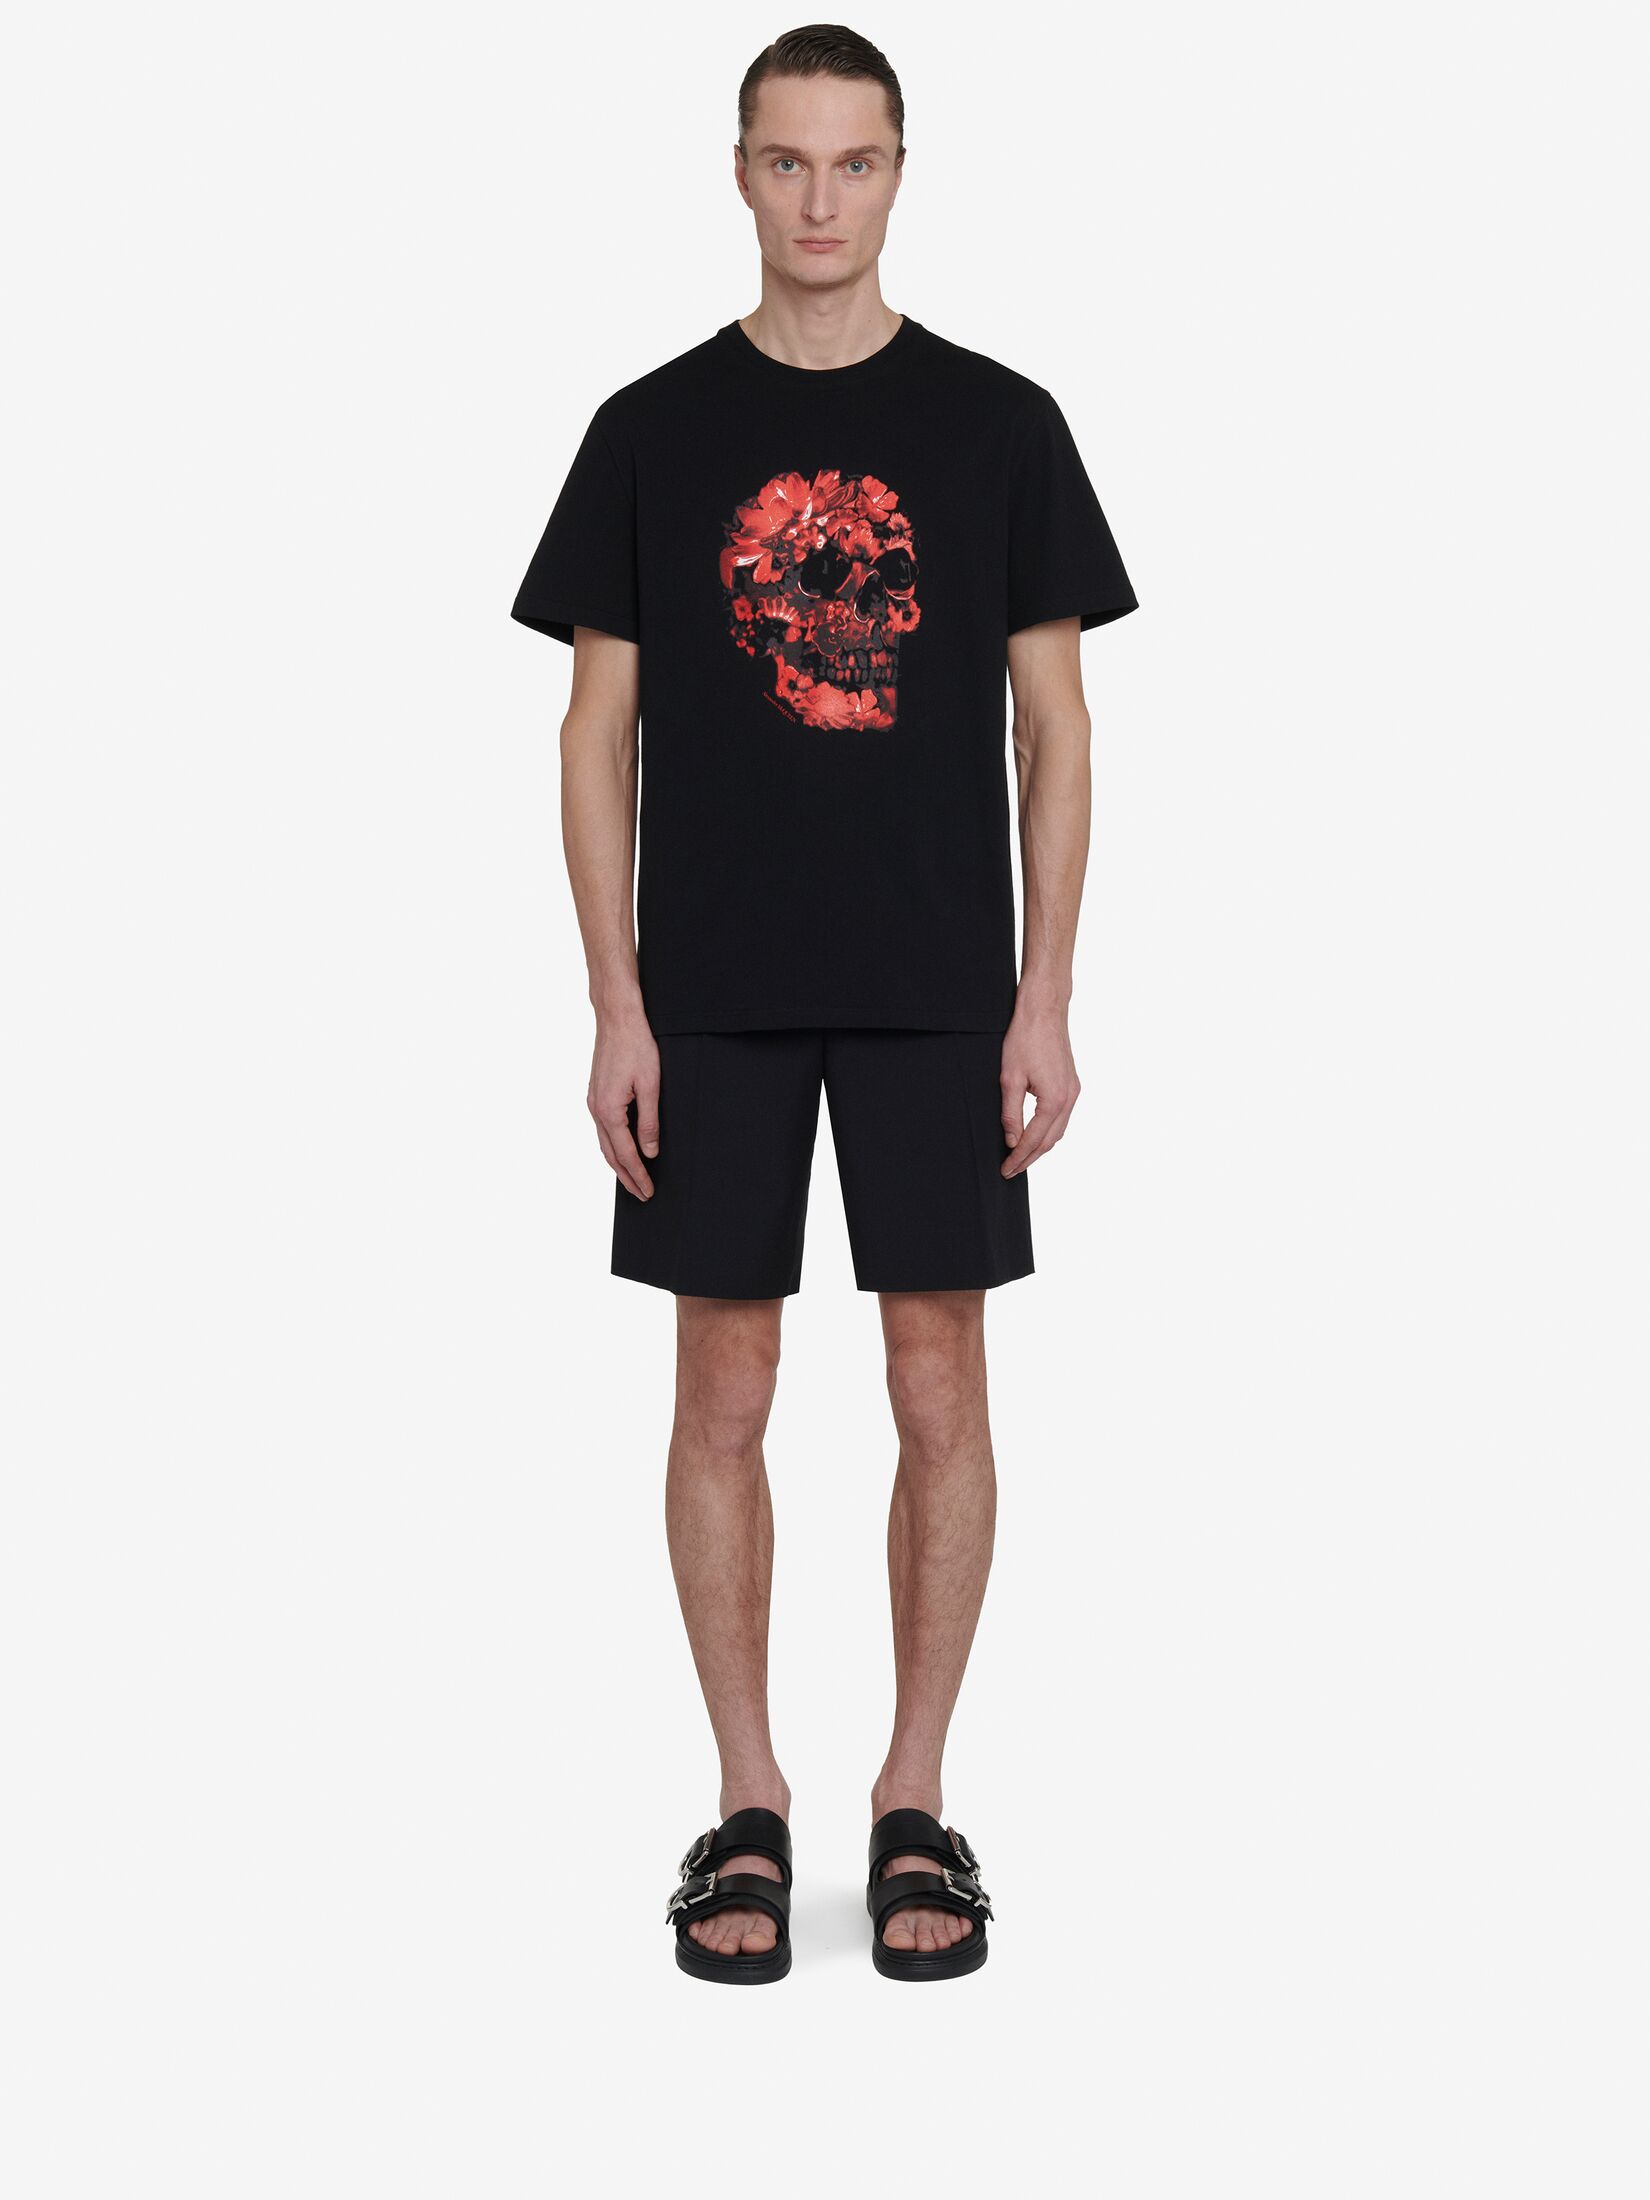 T-Shirt mit Wax Flower Skull-Print